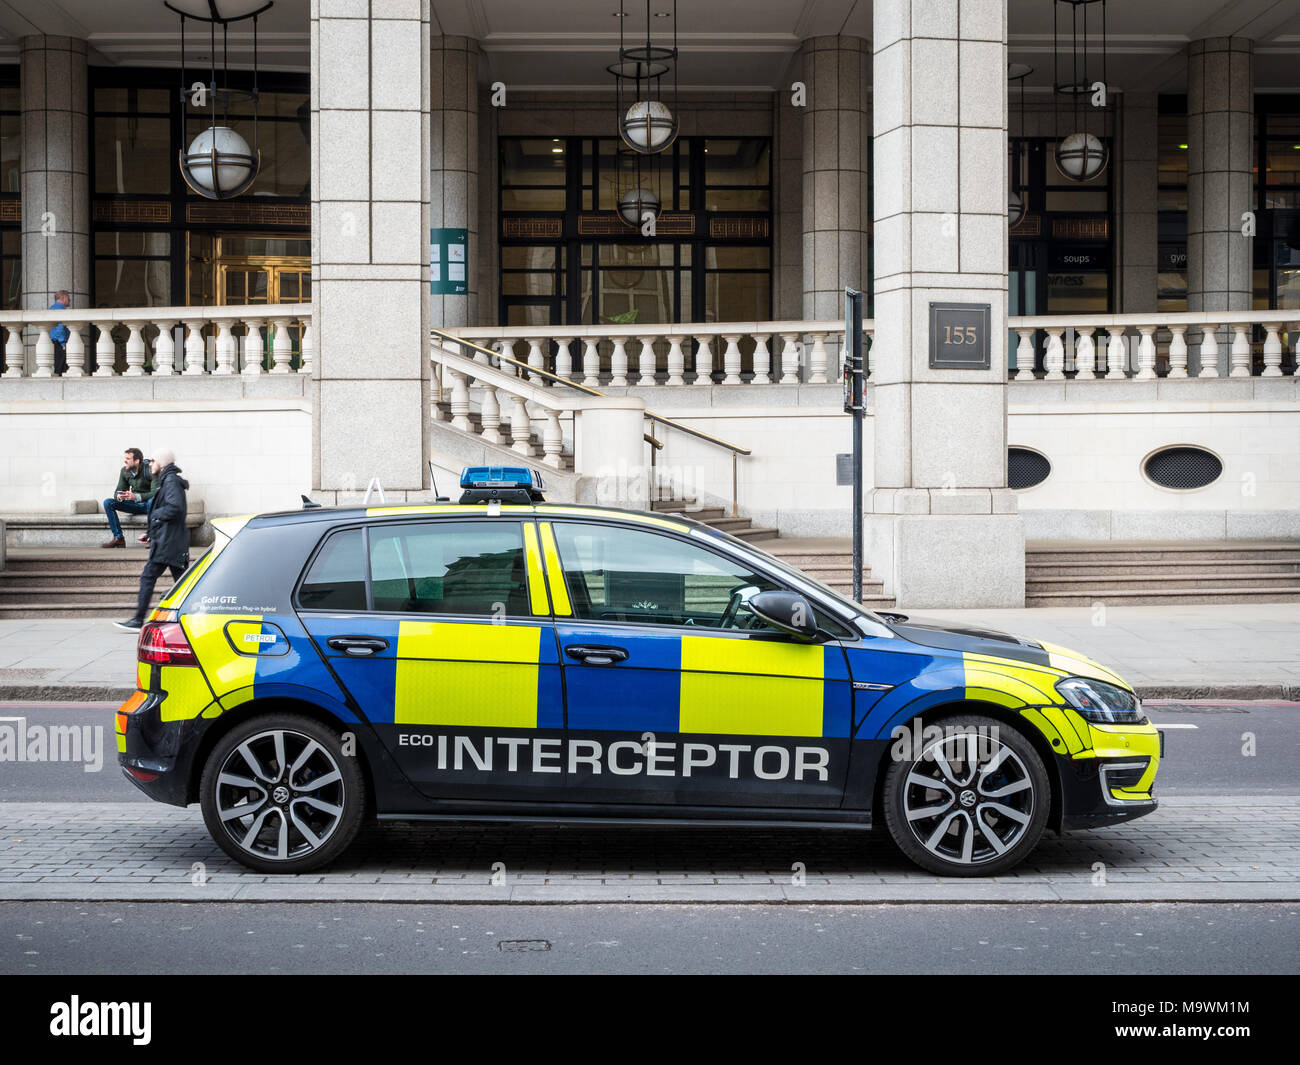 Eco Police Interceptor - coche de policía de la ciudad de Londres con un VW Golf GTE híbrido como interceptor de respuesta rápida Foto de stock